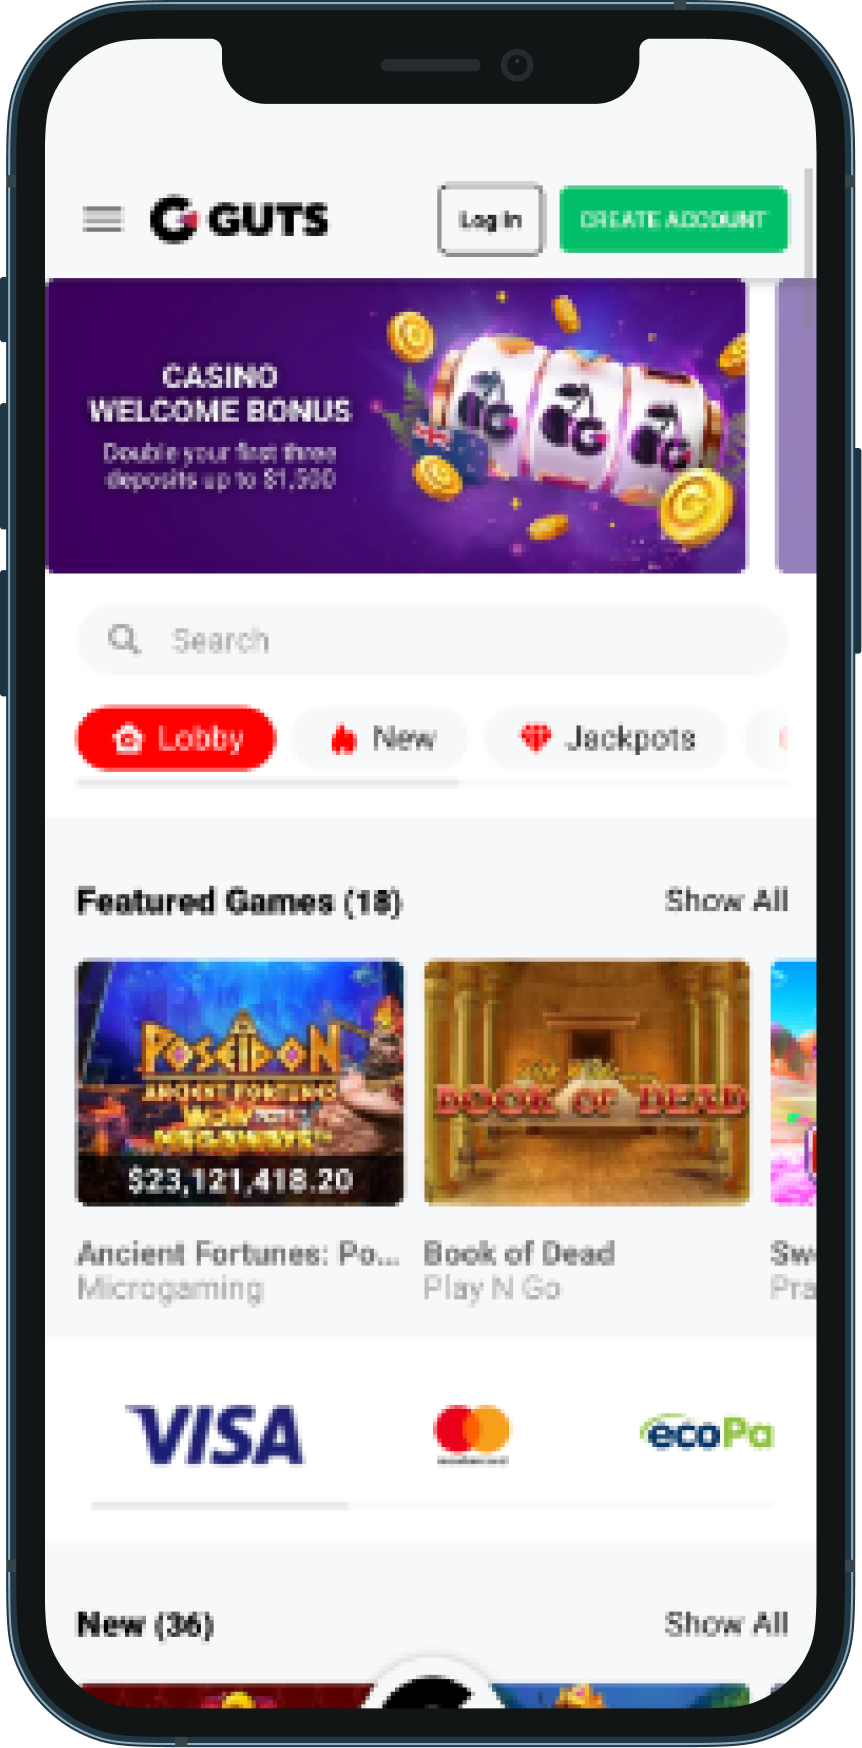 guts casino mobile site